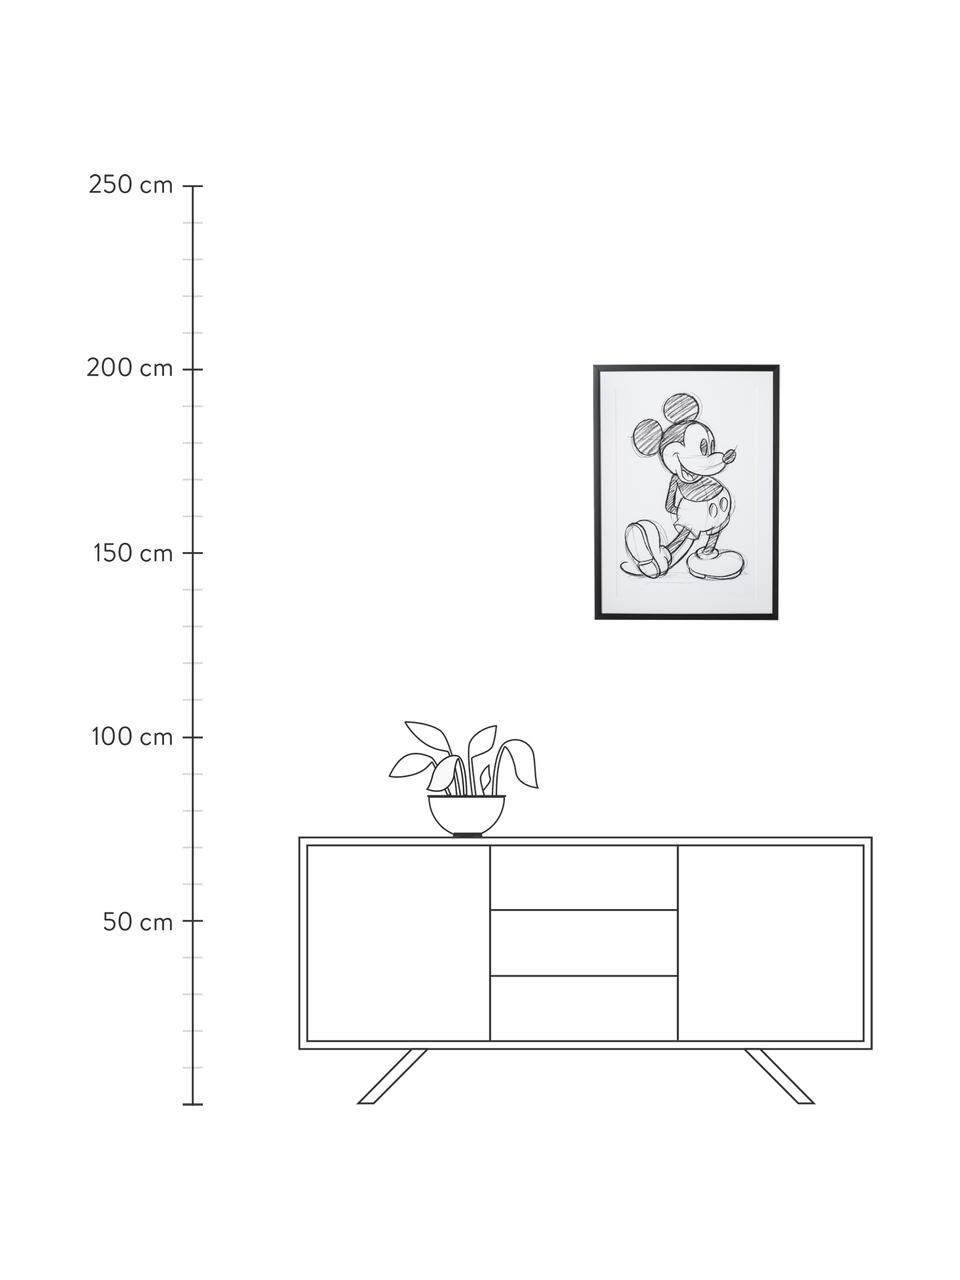 Stampa digitale incorniciata Mickey, Immagine: stampa digitale, Cornice: materiale sintetico, Bianco, nero, Larg. 50 x Alt. 70 cm